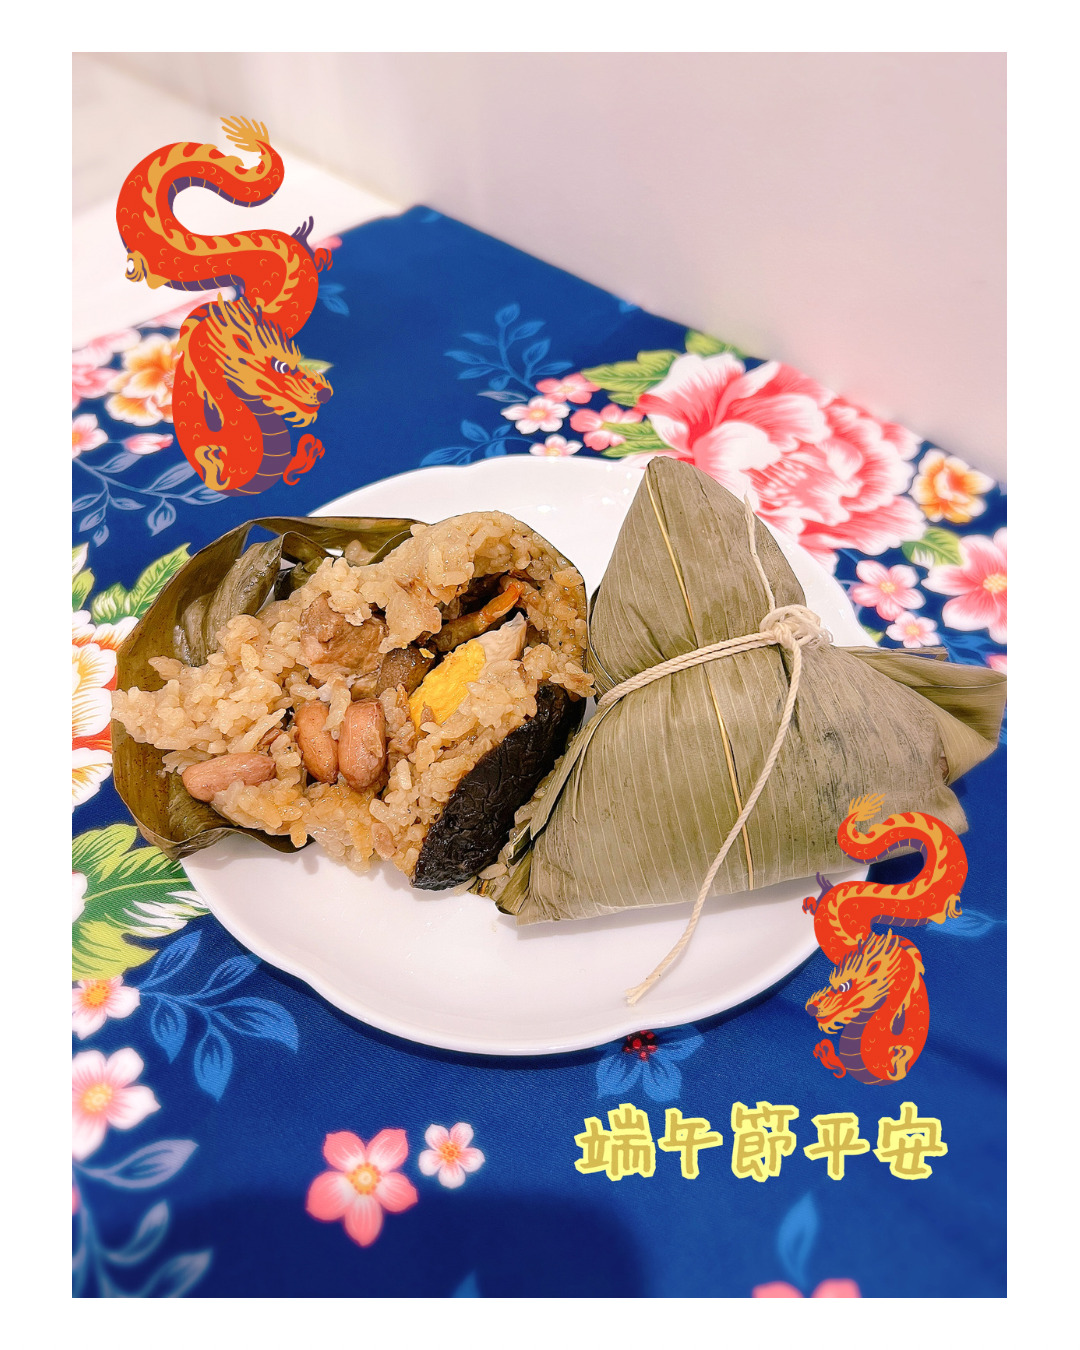 端午節快樂🐲藍鵲でタピオカと台湾粽をどうぞ！